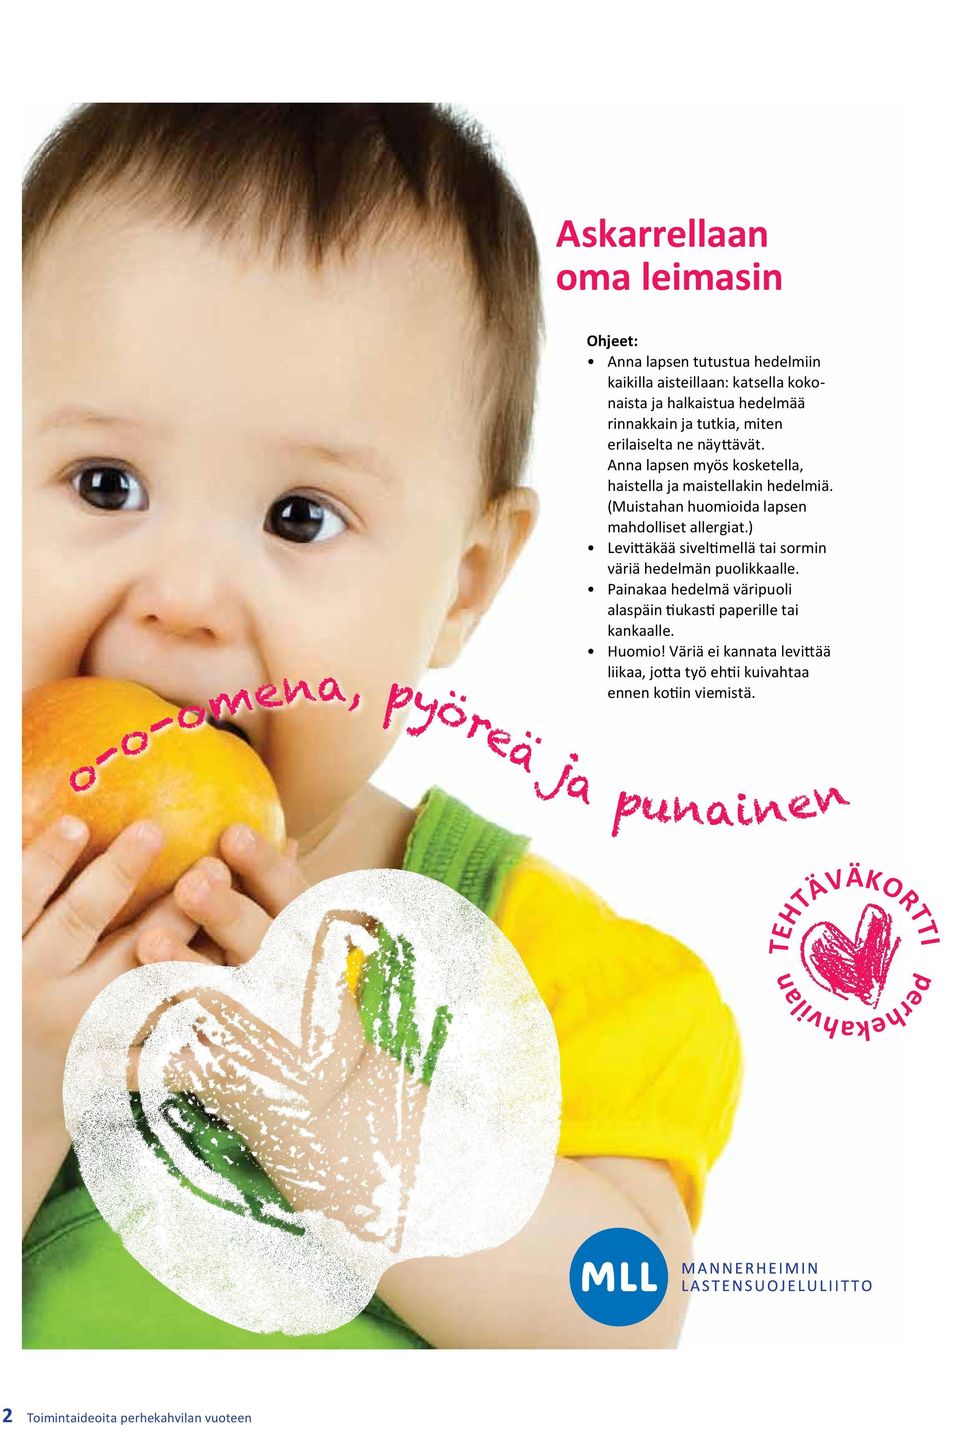 (Muistahan huomioida lapsen mahdolliset allergiat.) Levittäkää siveltimellä tai sormin väriä hedelmän puolikkaalle.